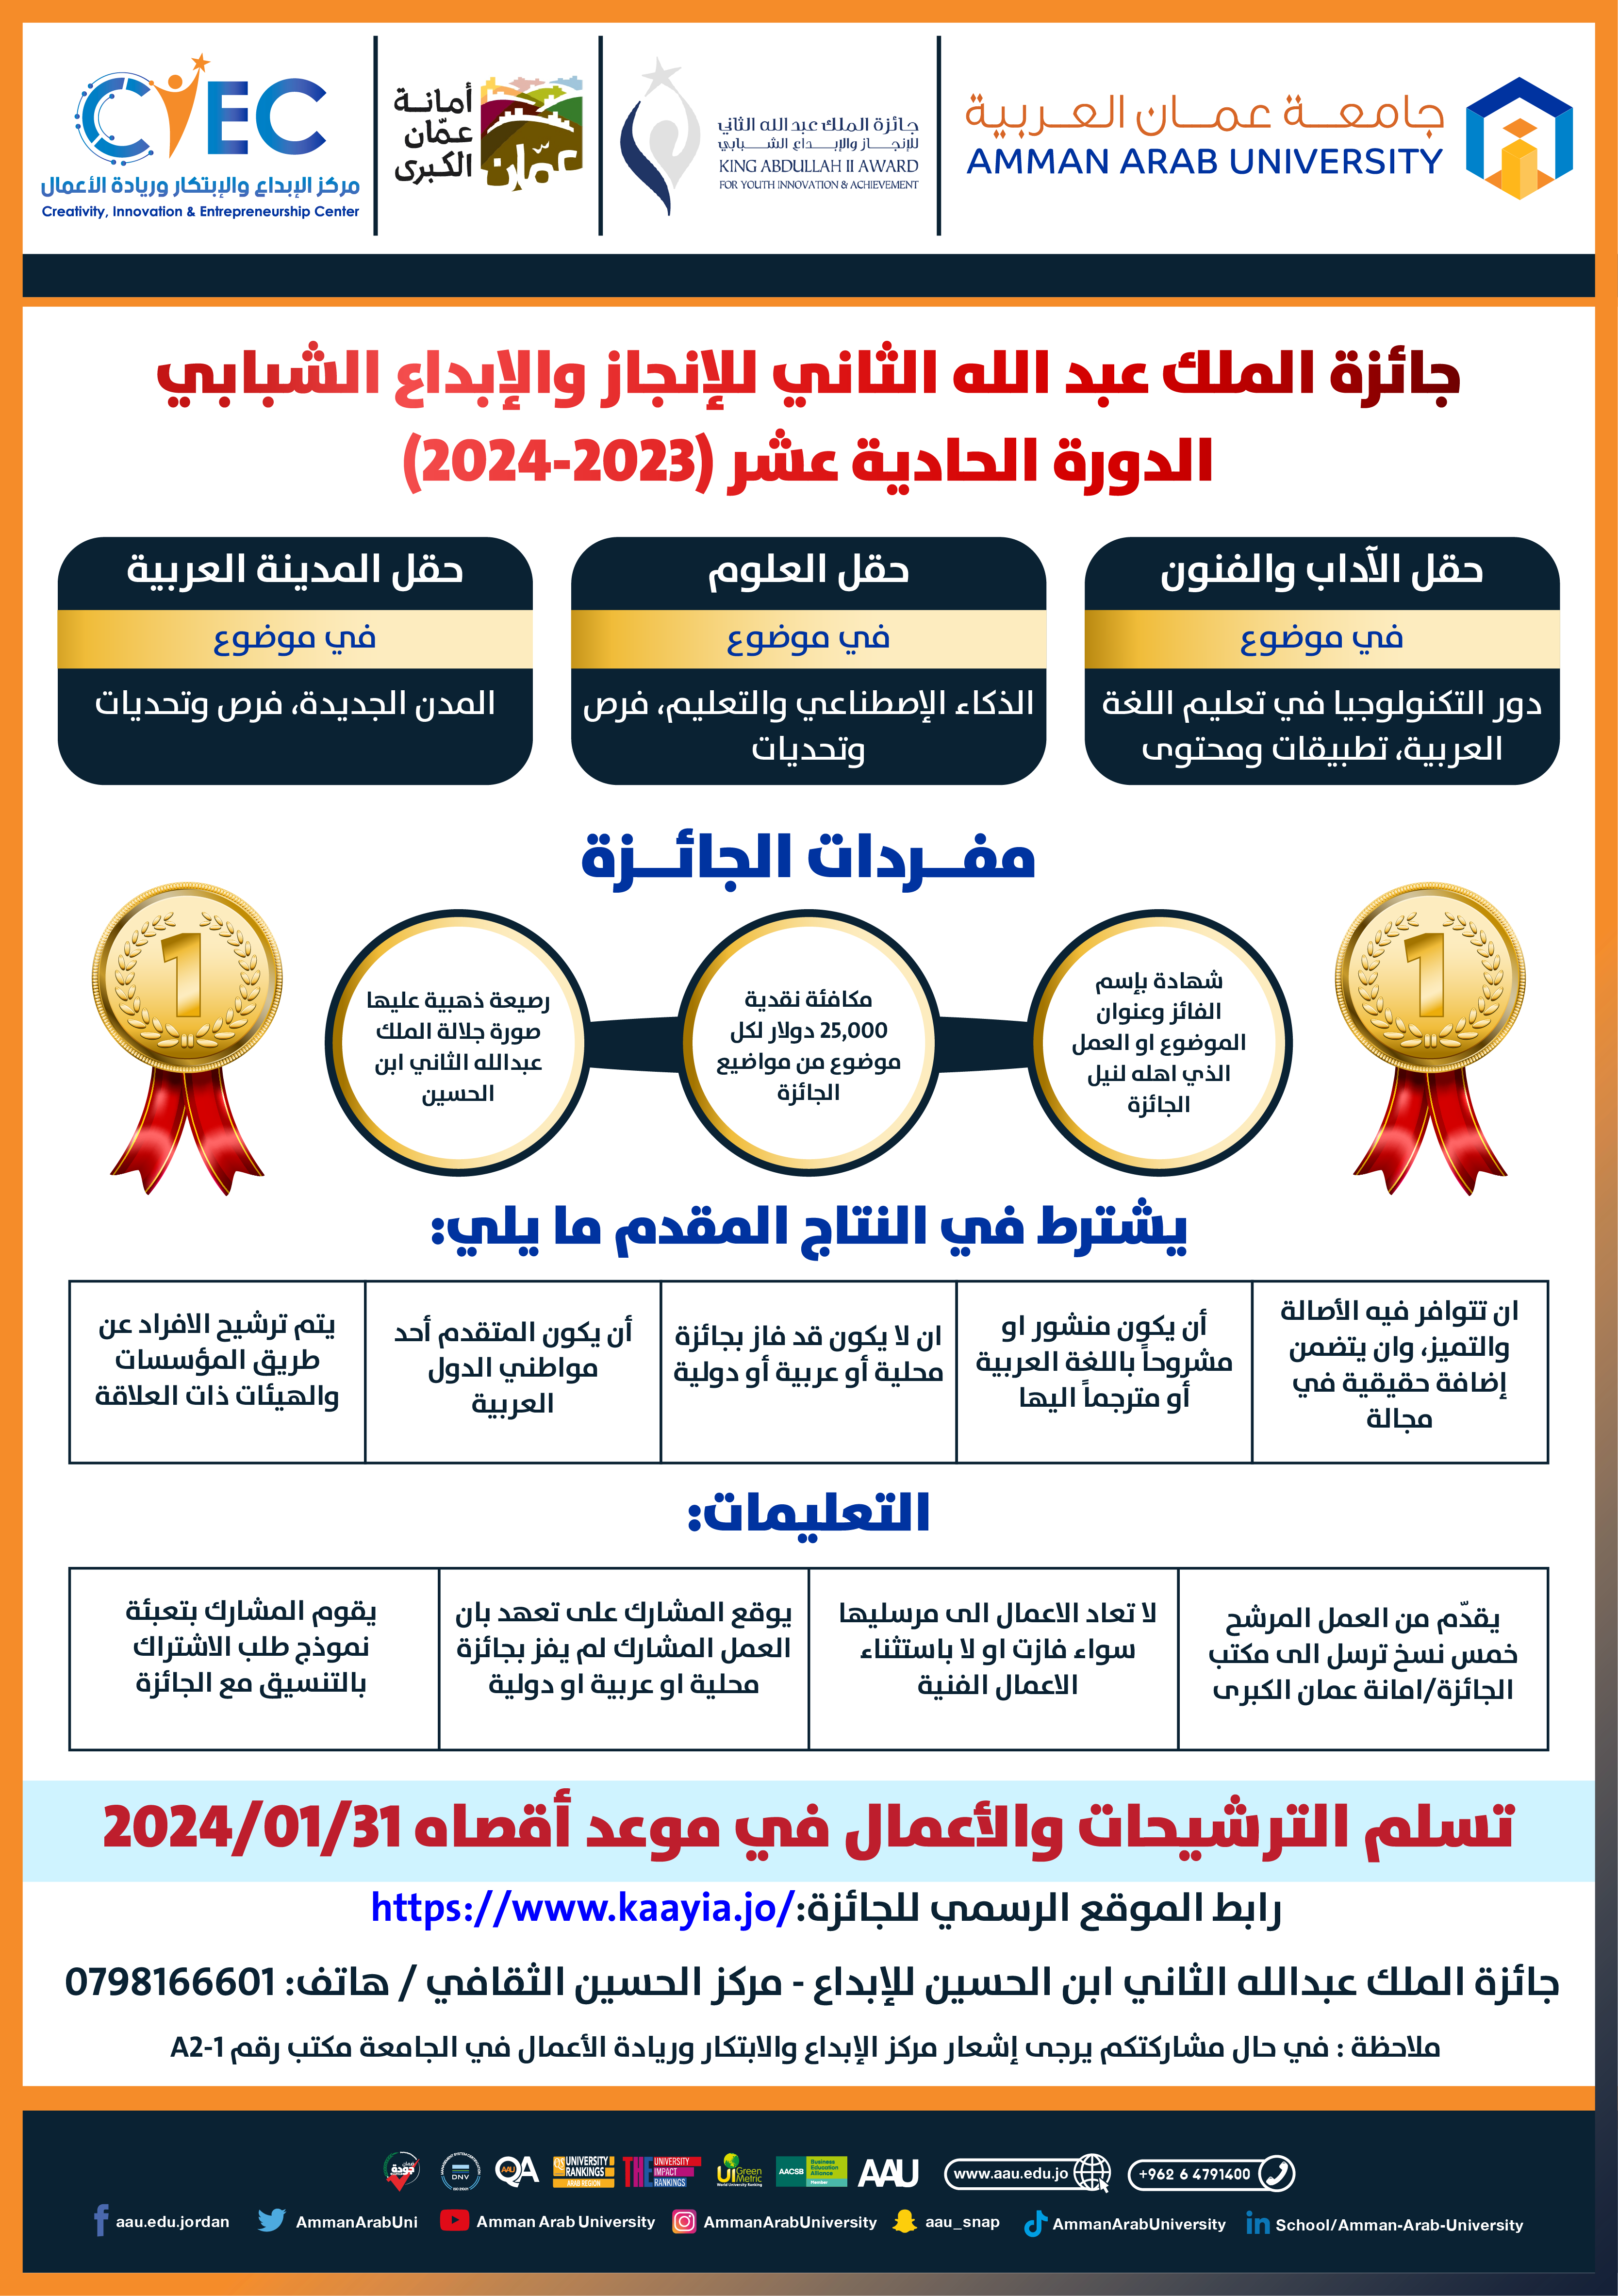 اعلان جائزة الملك عبدلله الثاني ابن الحسين للابداع 2023/2024